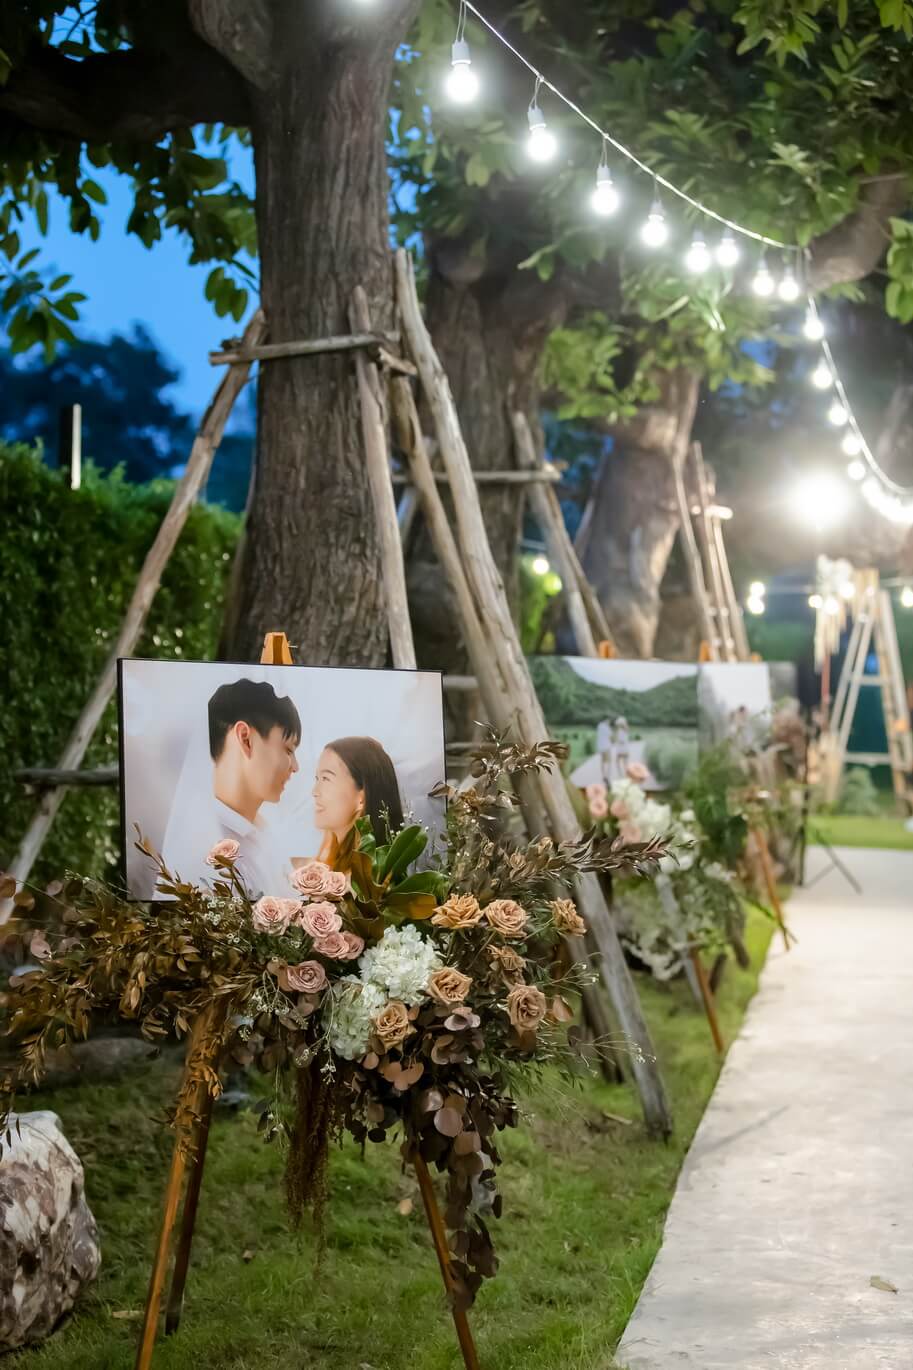 ไอเดียในการออกแบบงานแต่งงาน - Harmonize Wedding planner bangkok